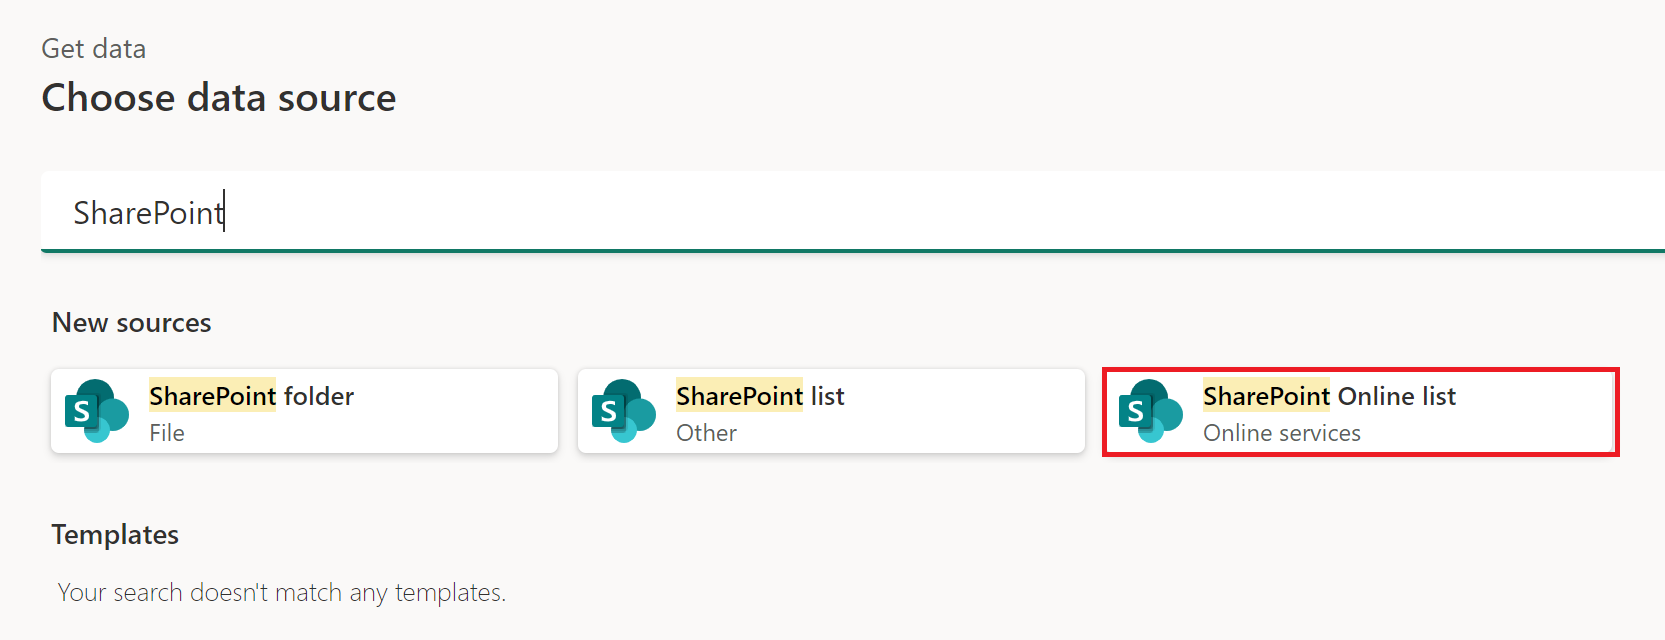 Captura de ecrã da janela obter dados com a lista do SharePoint Online enfatizada.